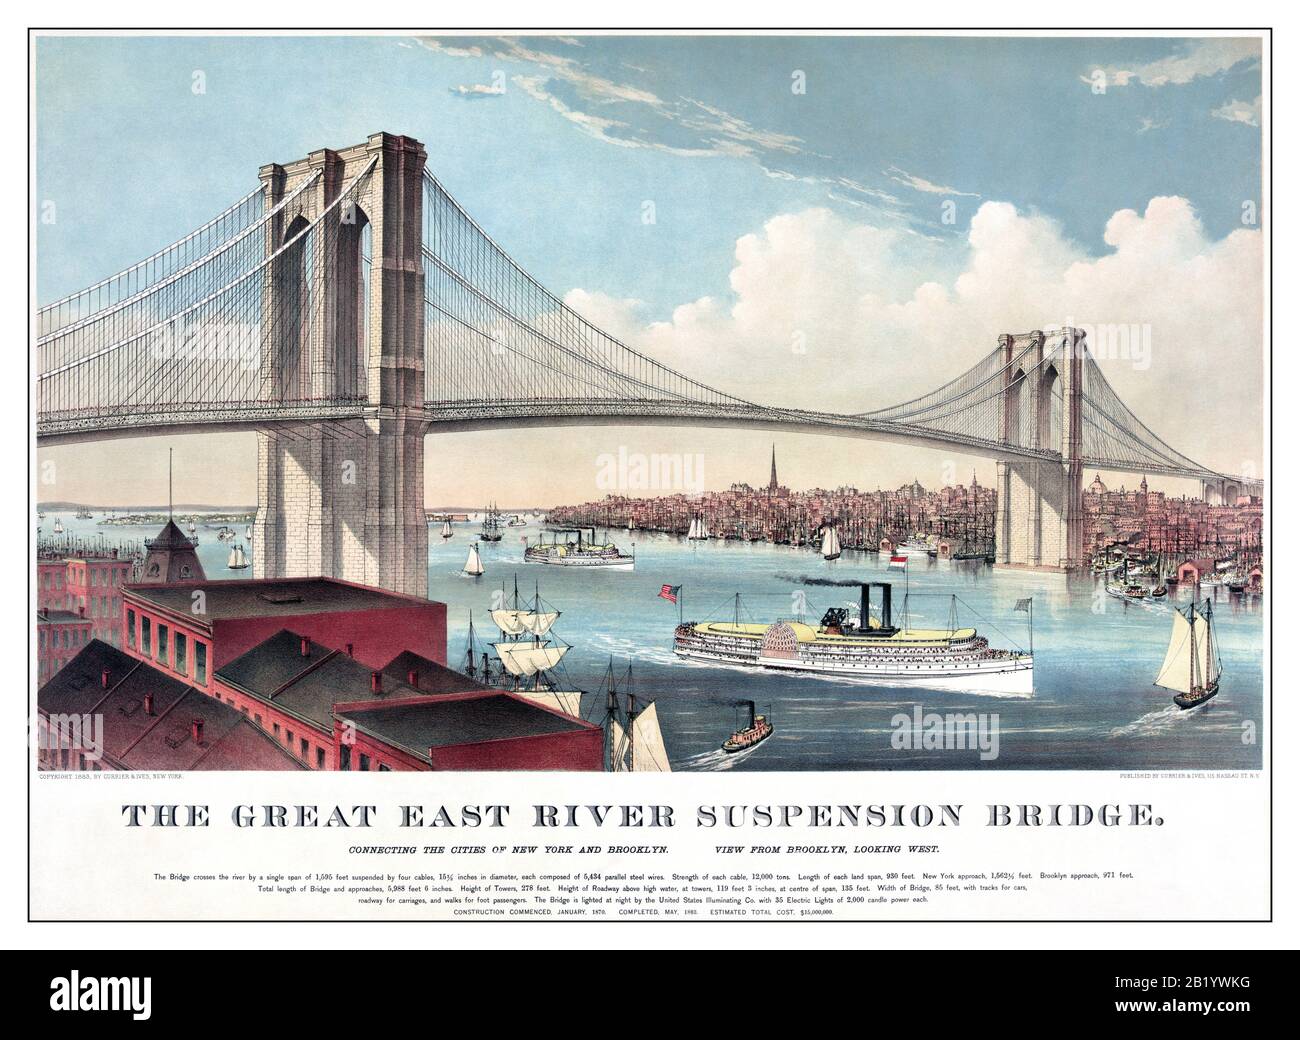 Il Chromolithograph del Ponte di Brooklyn dell'epoca del 1800 nella città di New York, New York, Stati Uniti, di Currier e Ives. Il ponte sospeso Great East River. Collegamento tra le città di New York e Brooklyn. Vista da Brooklyn, guardando verso ovest. Barca Con Pedalò A Vapore Foto Stock